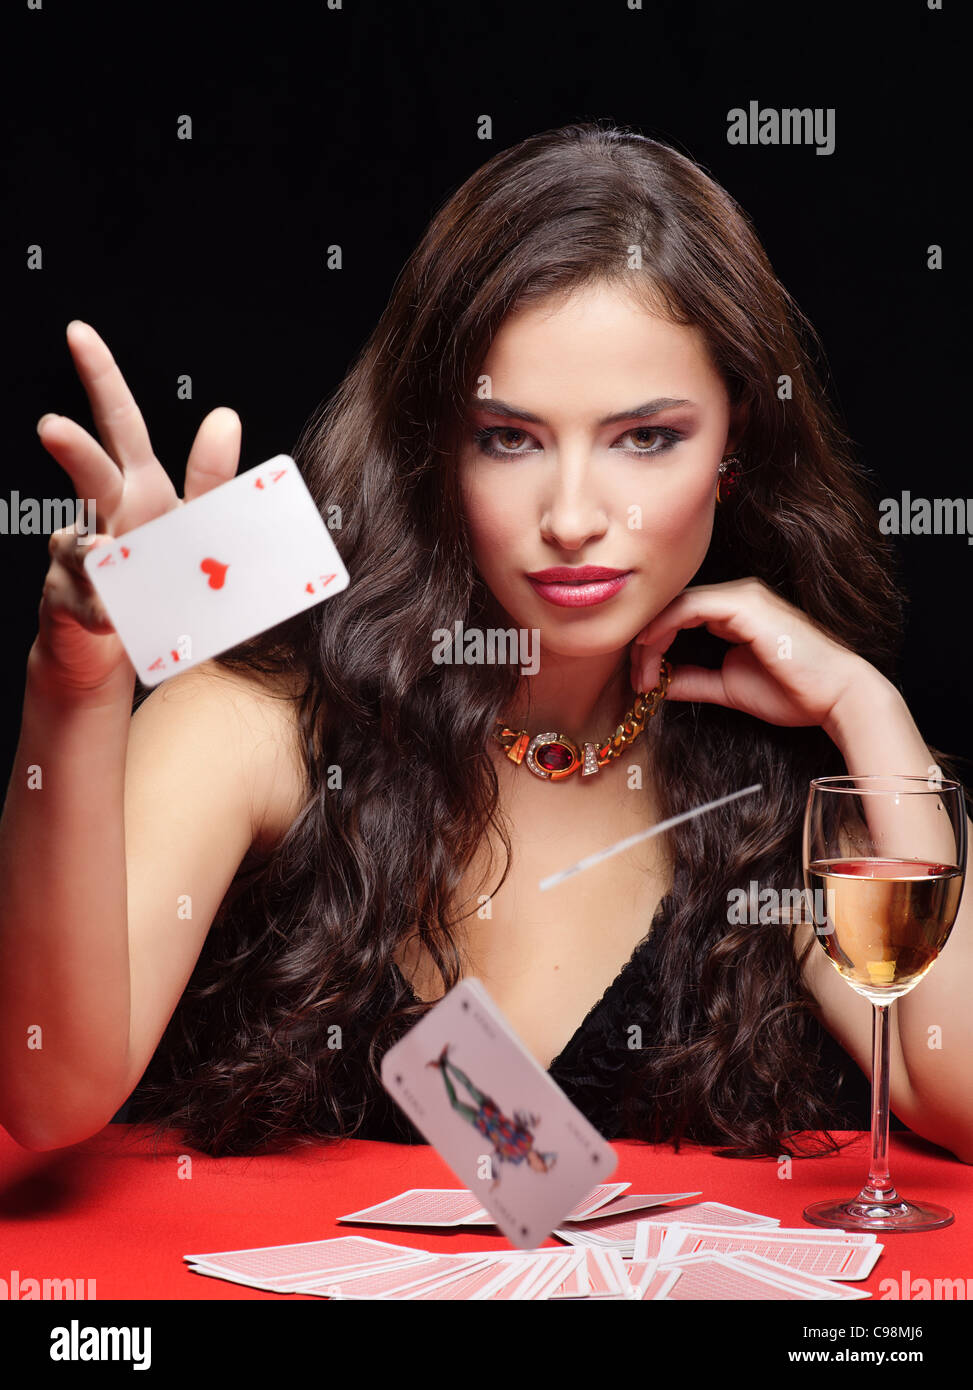 Piuttosto giovane donna sul gioco d'azzardo tabella rossa Foto Stock